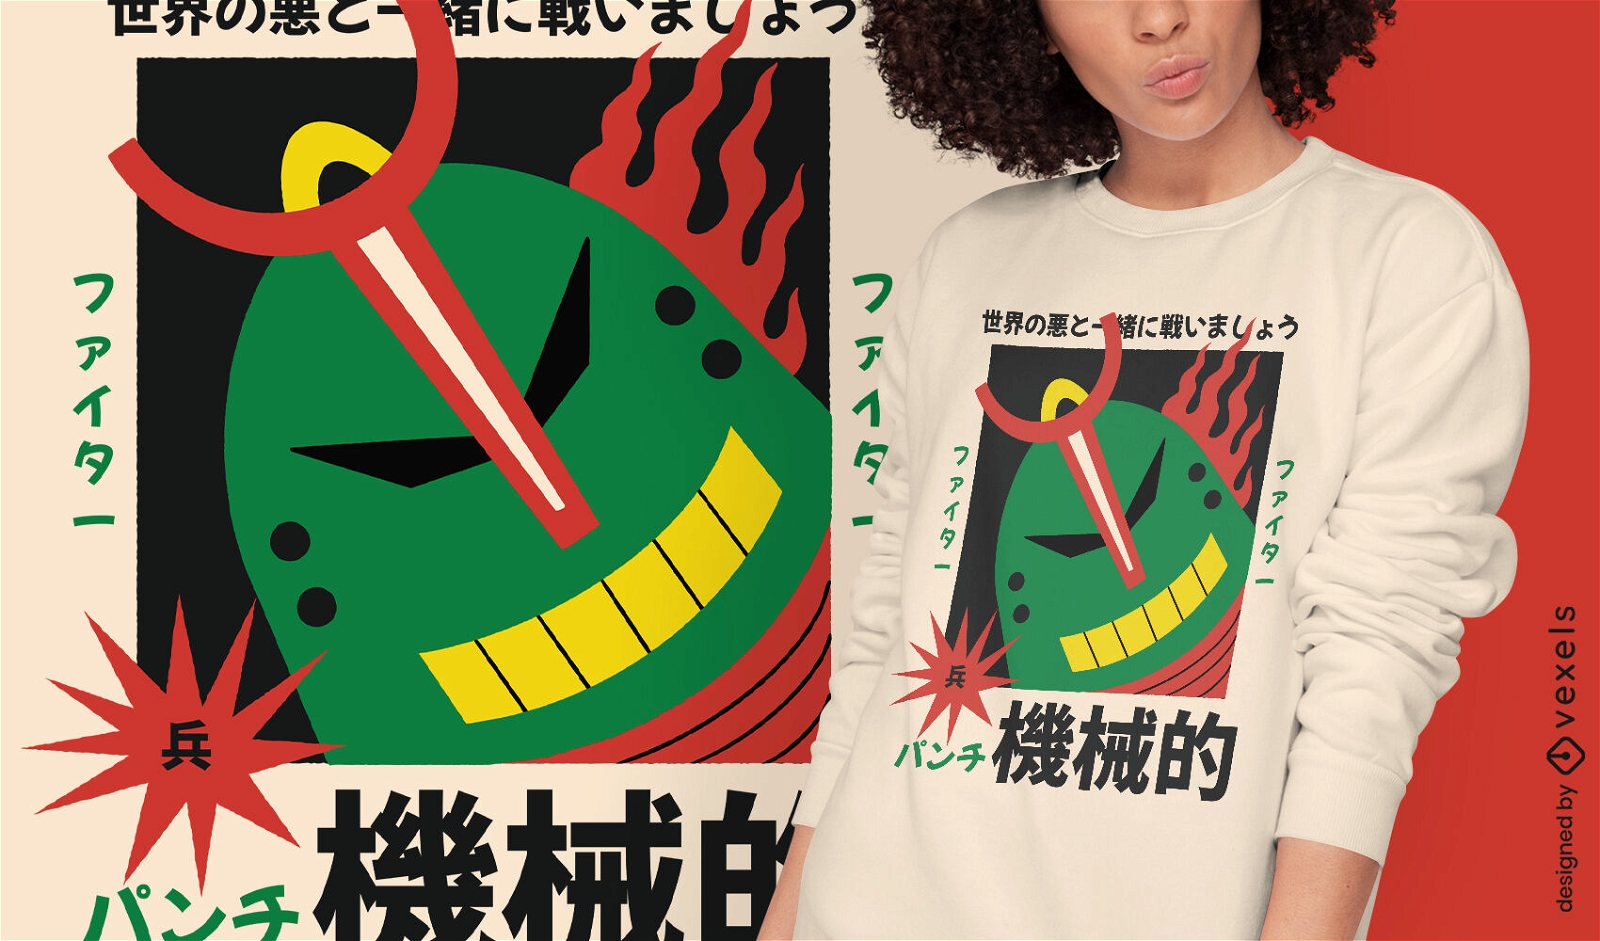 Japanese robot green head t-shirt design